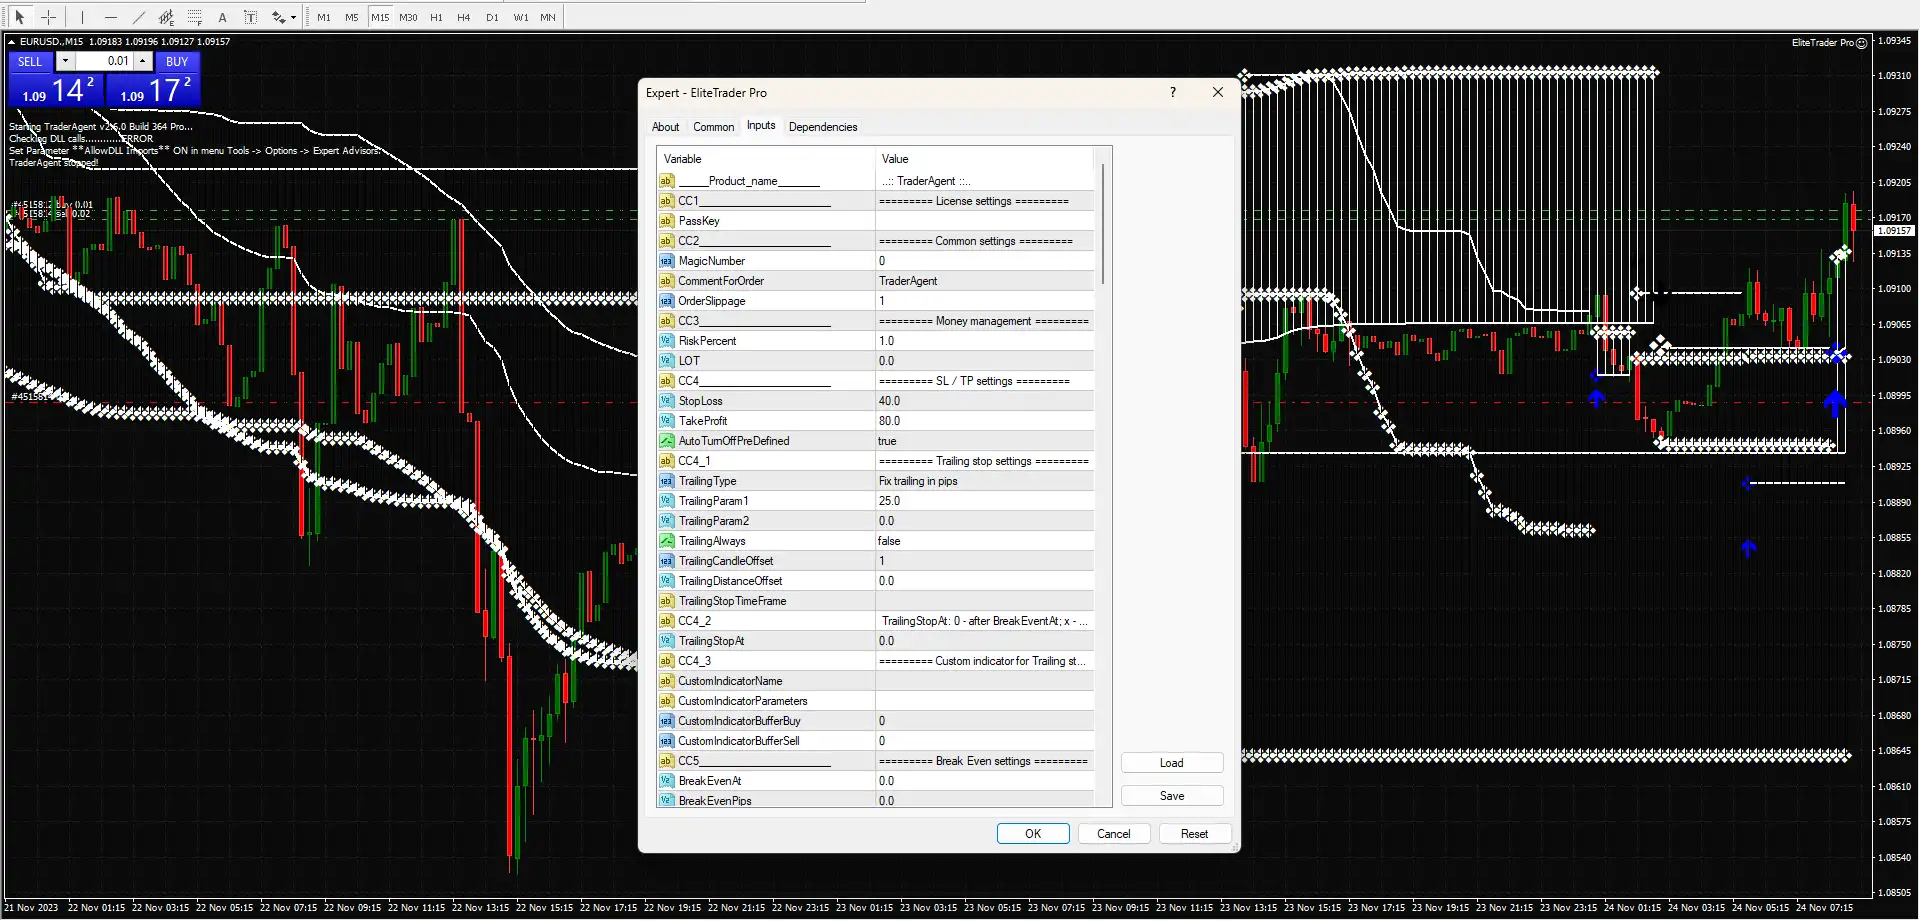 Elite Trader Pro Indicator & EA MT4 – Free Download -